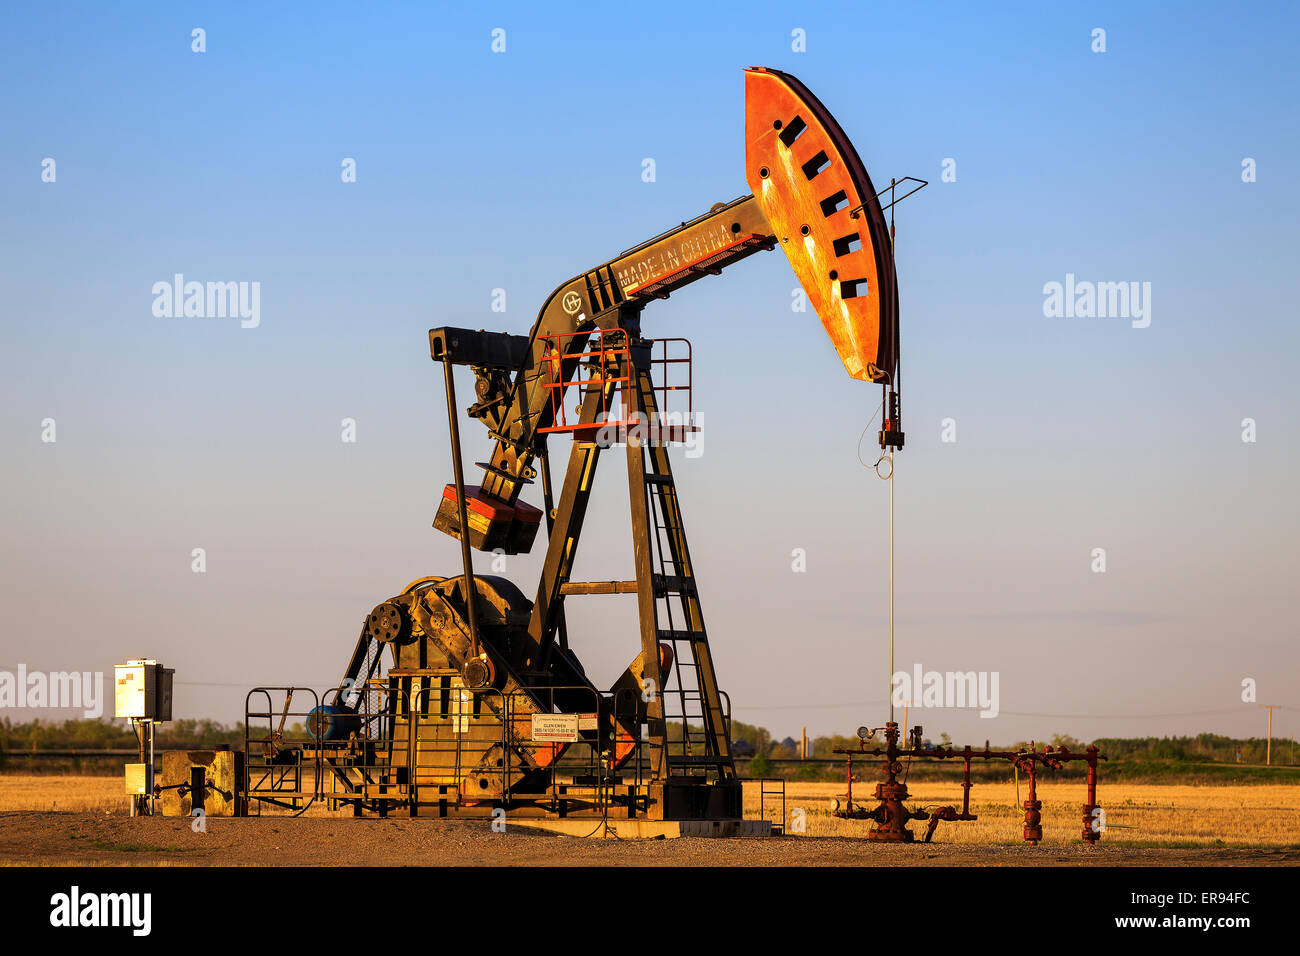 La bomba de aceite en el gato Bakken campo petrolífero, cerca de Estevan, Saskatchewan, Canadá Foto de stock